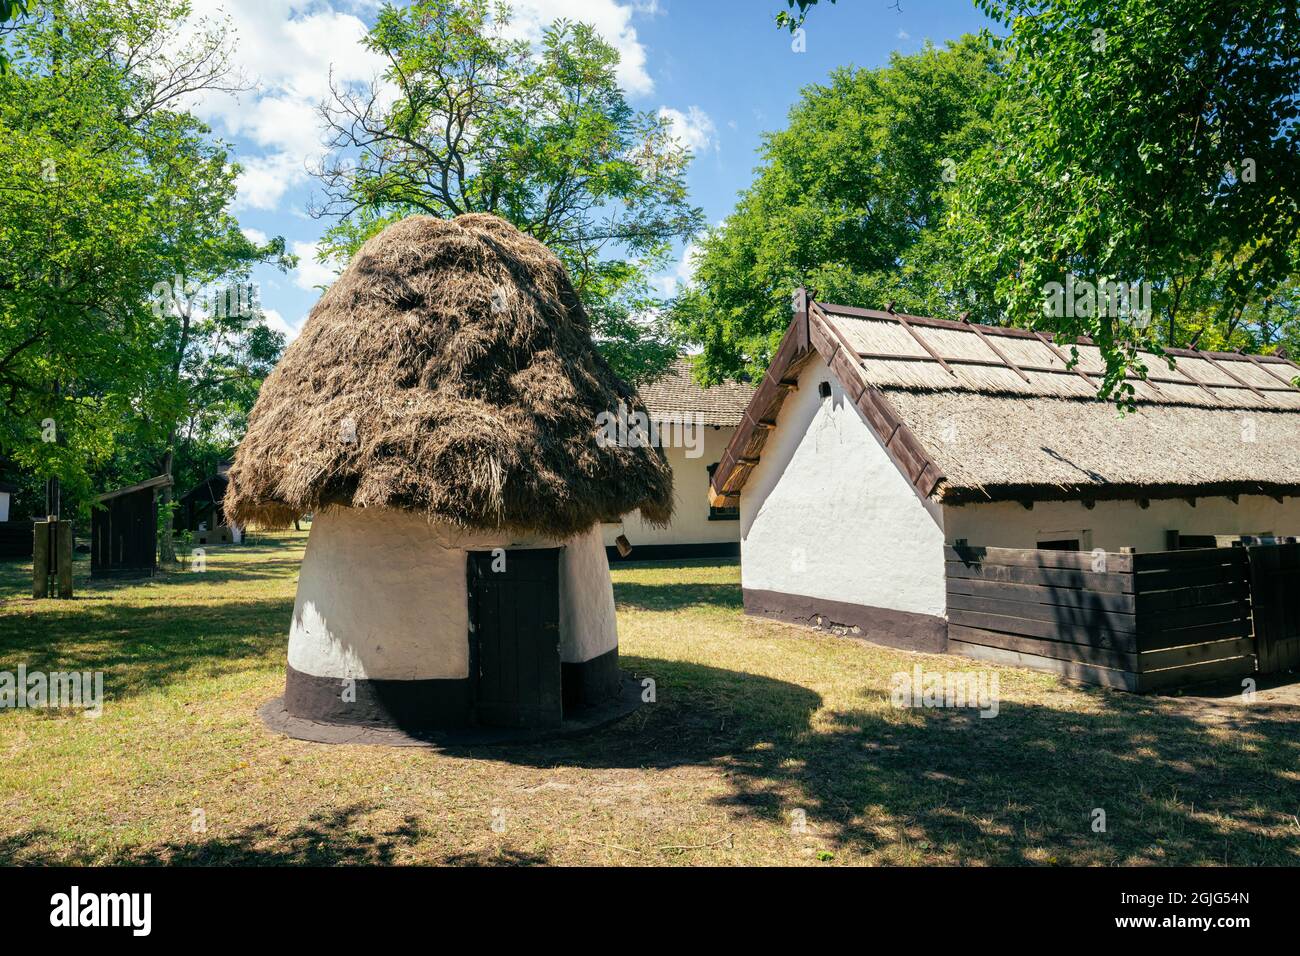 Antiguas casas húngaras en el Parque Nacional del Patrimonio de Ópusztaszer, un museo al aire libre de la historia húngara Foto de stock